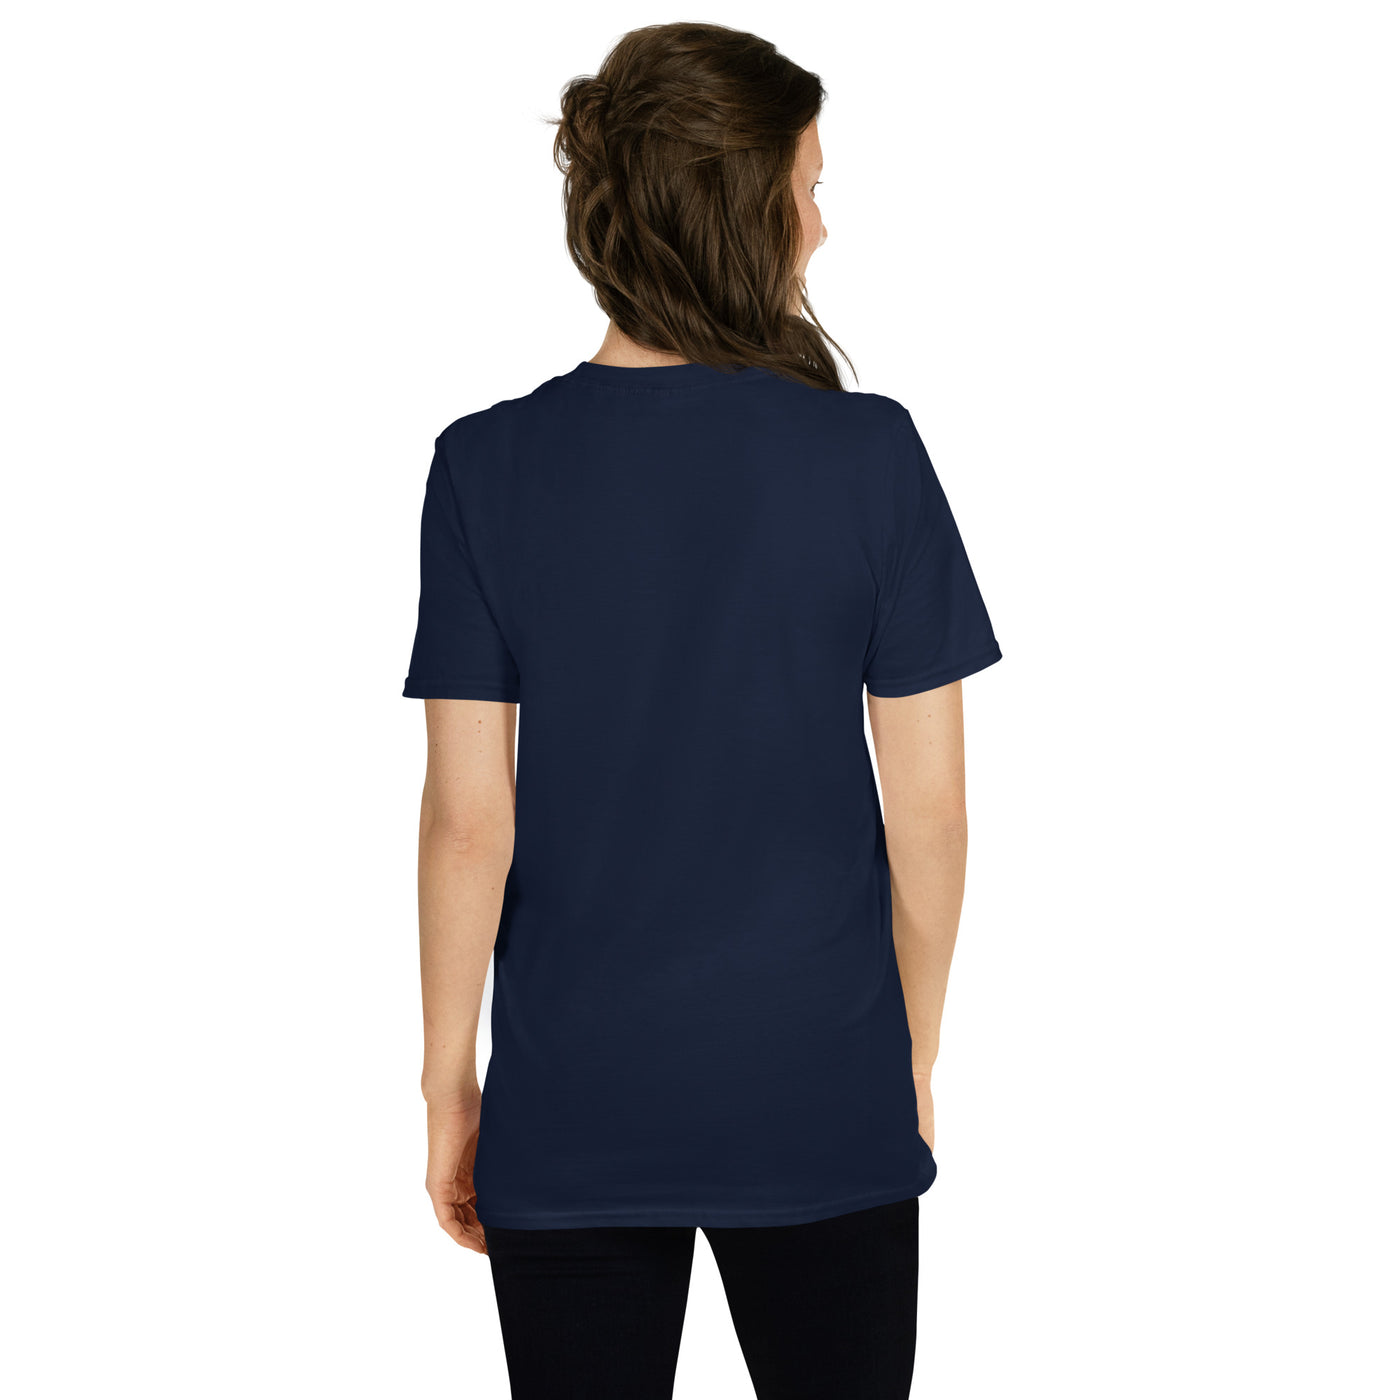 Dachshund Nacho Average Doxie Unisex T-Shirt